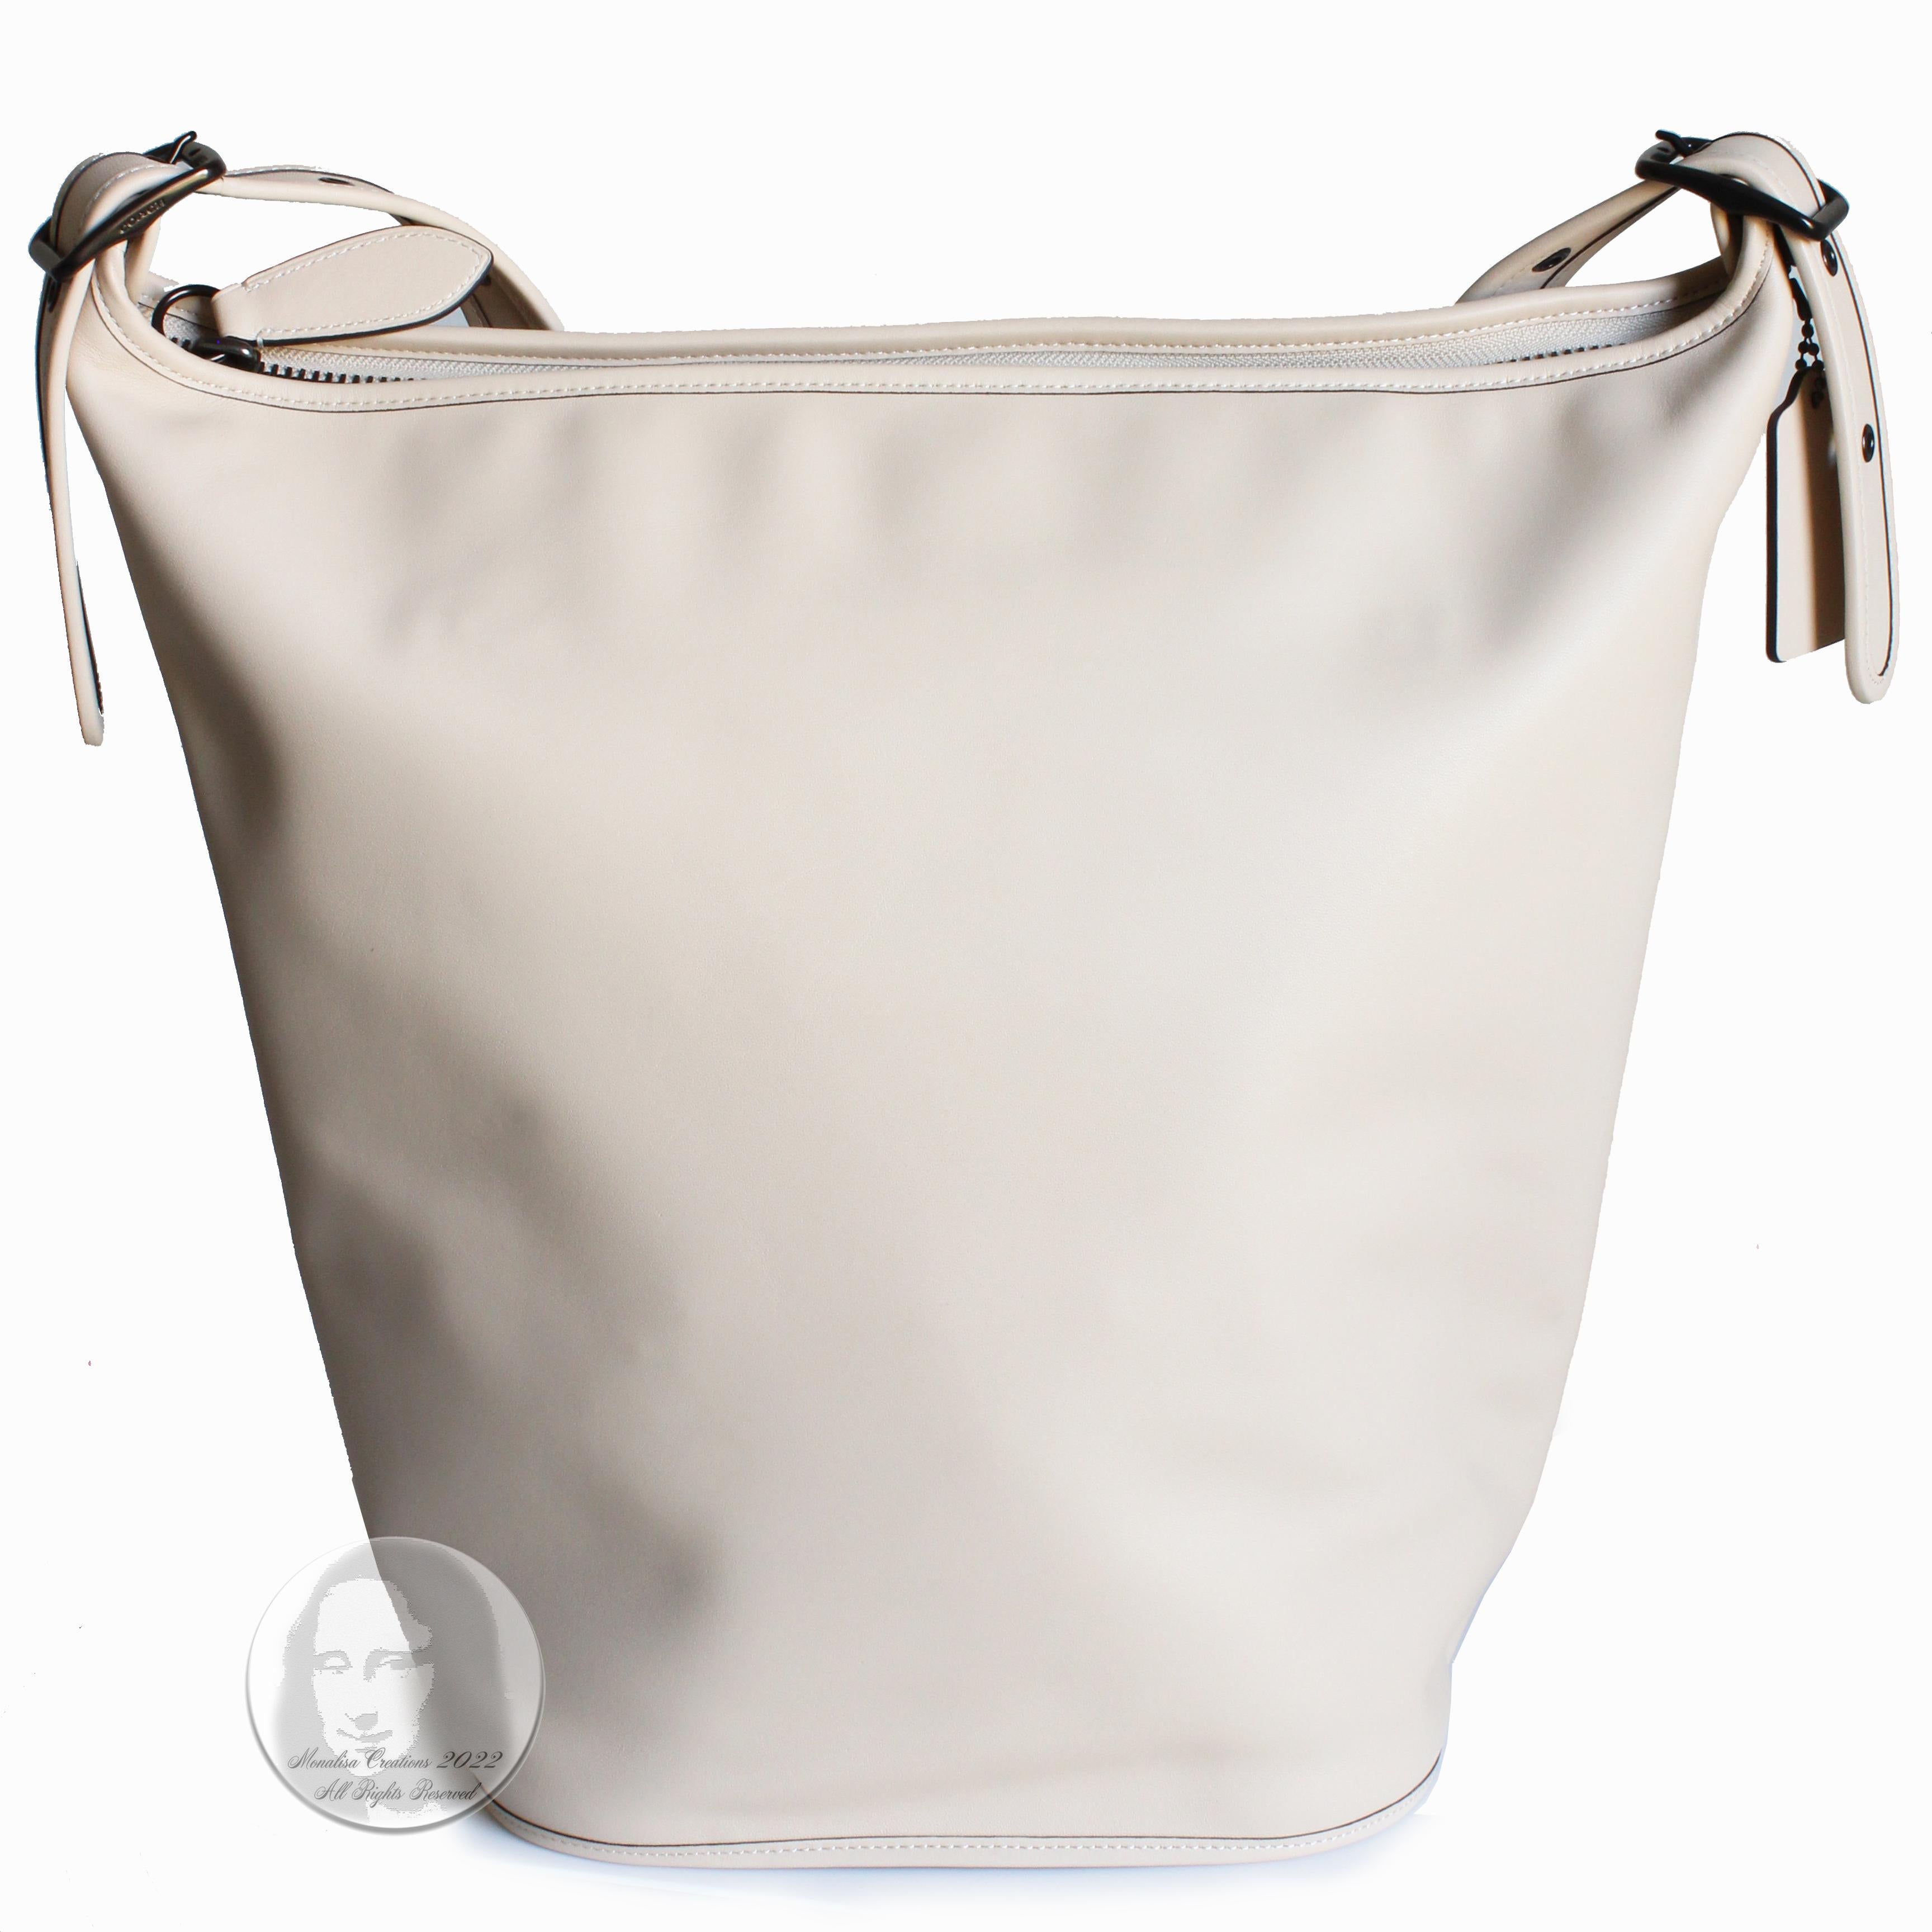 Coach X Tom Wesselmann Tasche Duffle XL Bucket Bag Limited Edition Crossbody Neu  1